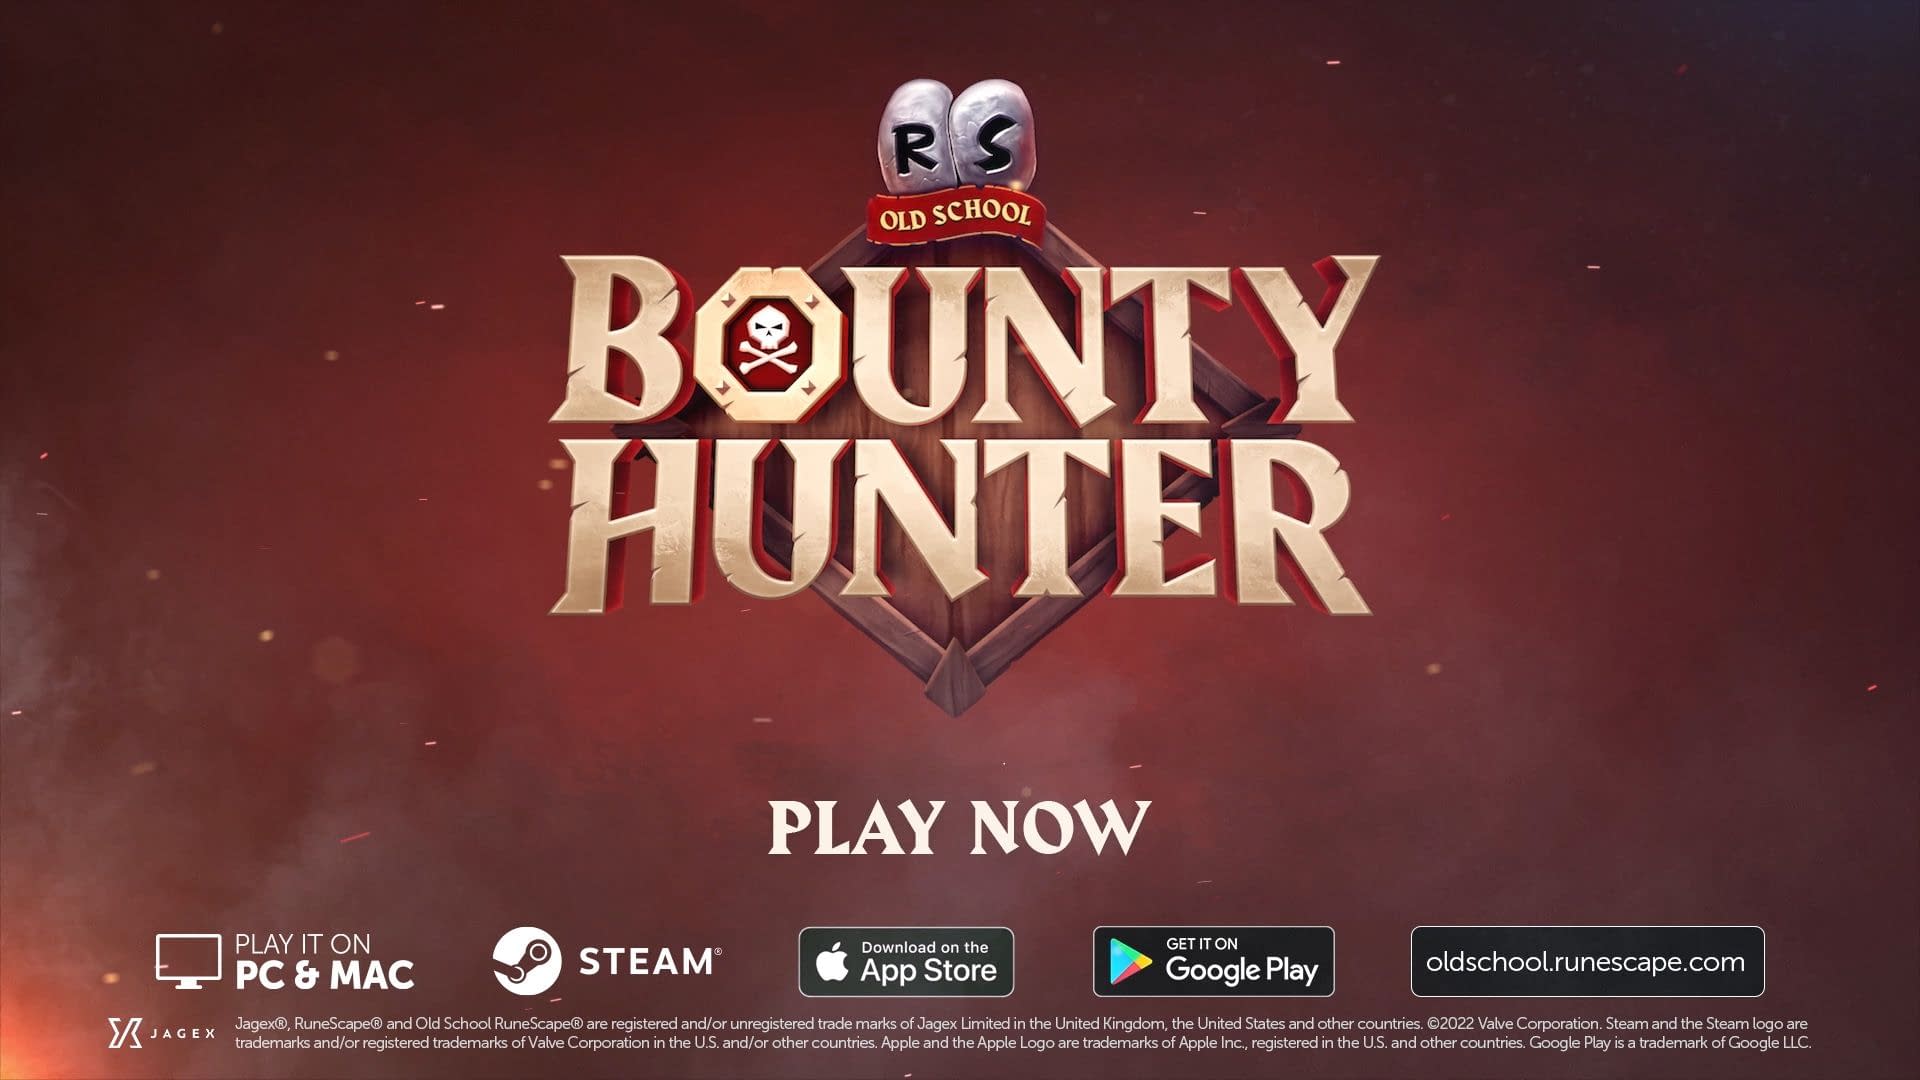 Bounty Hunter Begins Again in Old School RuneScape 